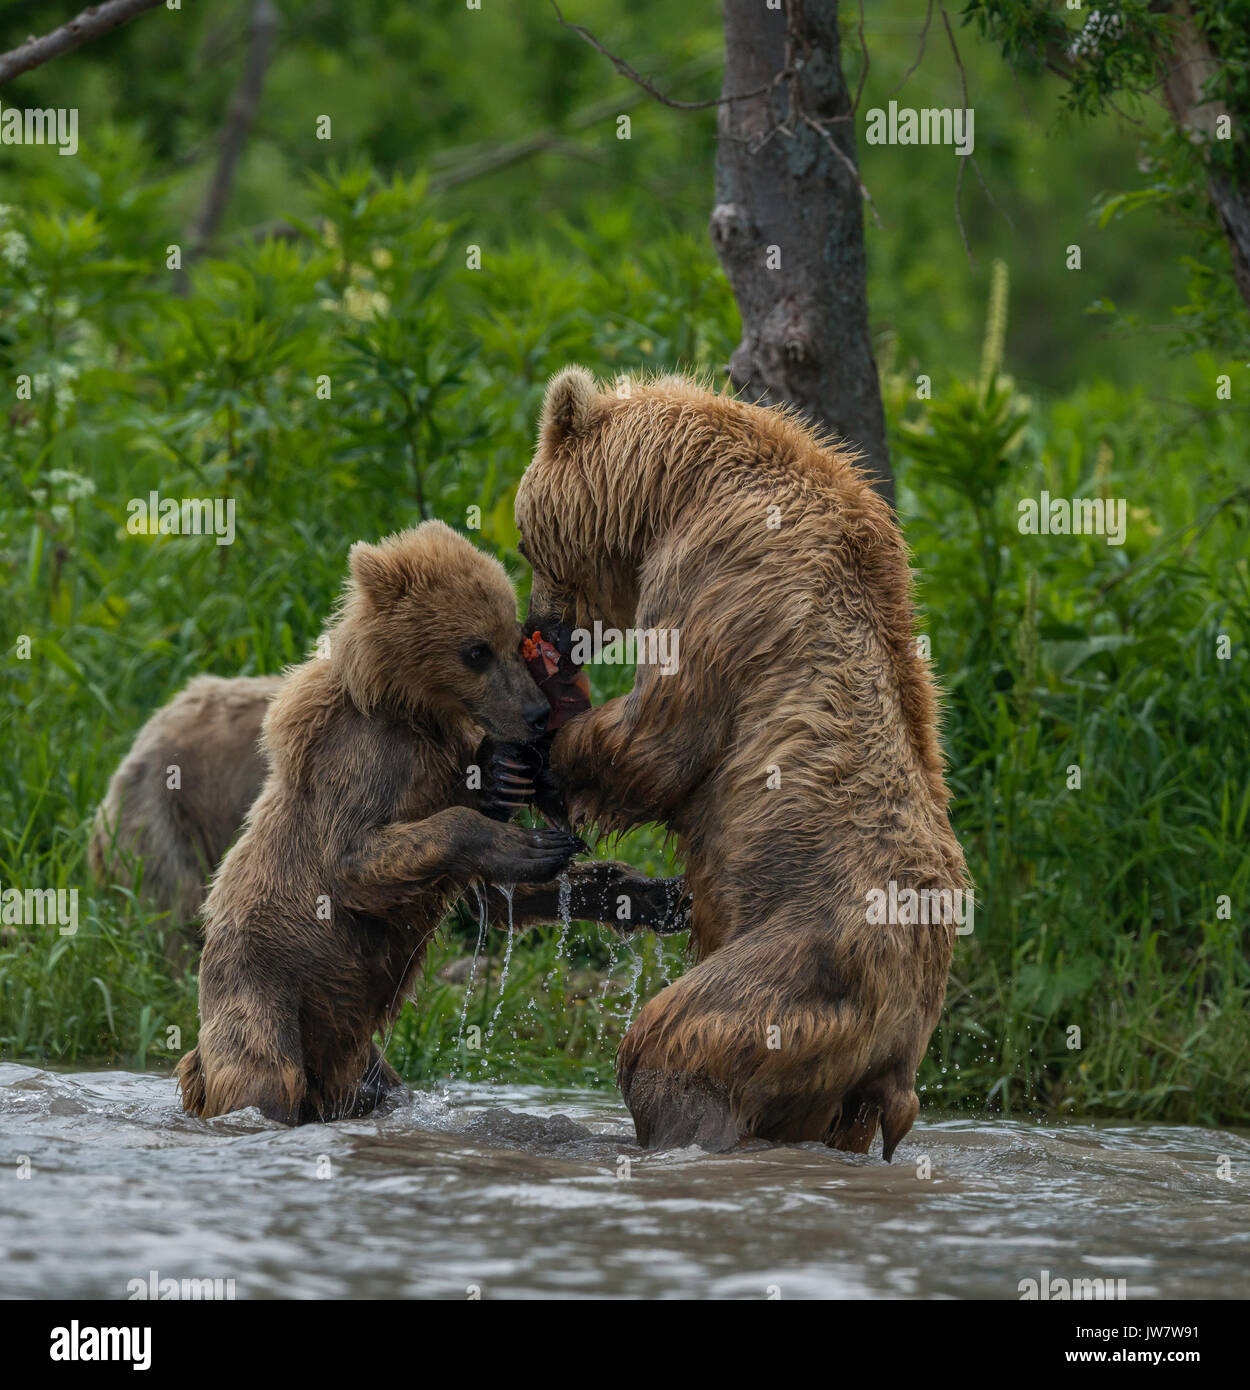 Brown Bear Cub cercando di combattere il Salmone Sockeye dalla madre. Immagine è stata scattata in sistemi fluviali svuotamento nel Curili Lago, Kamchatka, Russia. Foto Stock